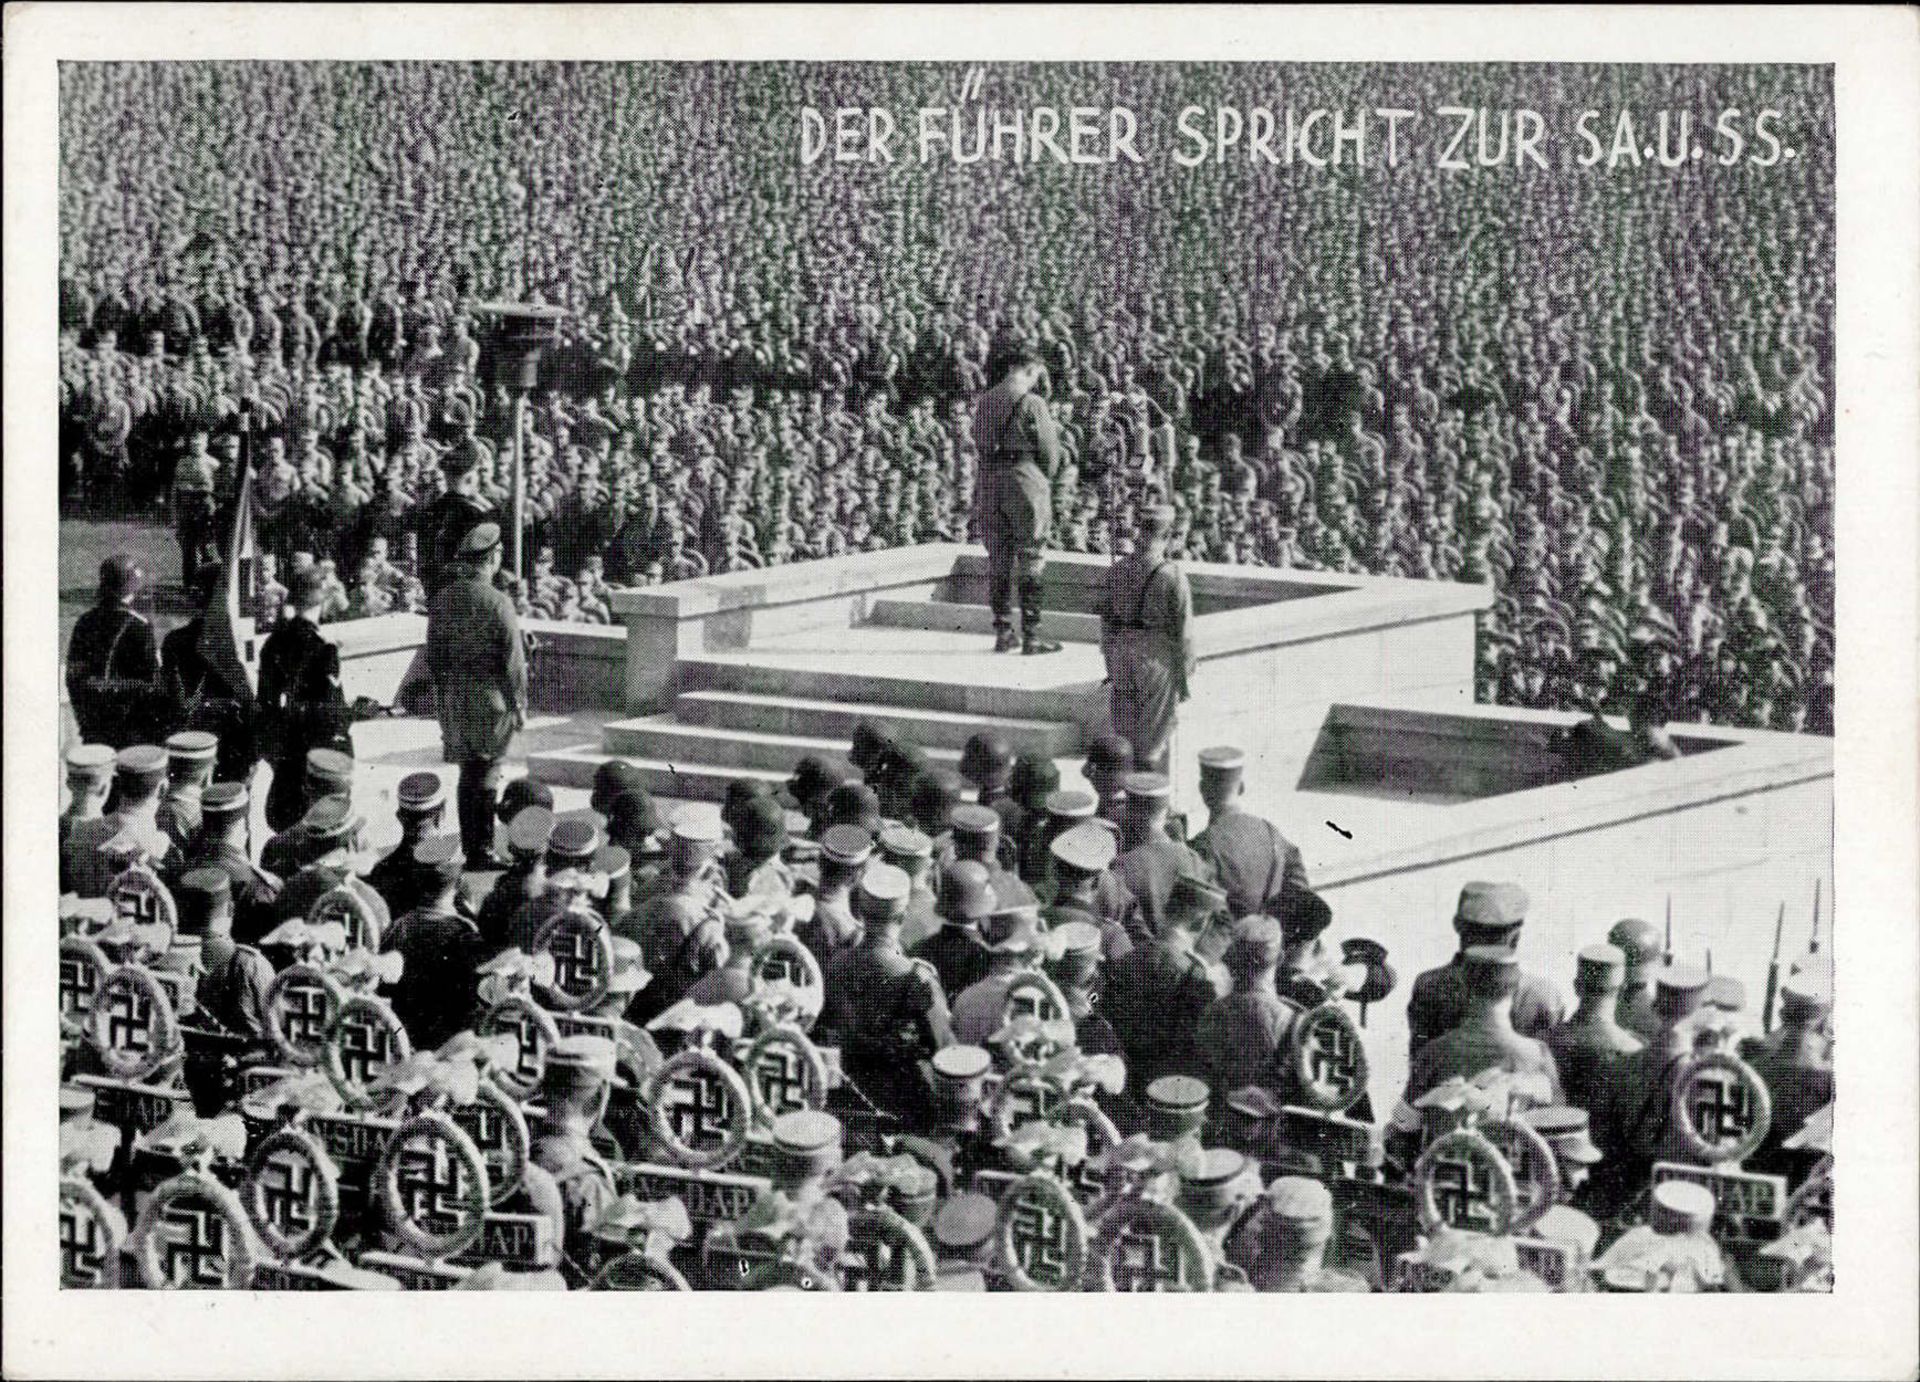 REICHSPARTEITAG NÜRNBERG 1934 WK II - der Führer spricht zur SA und SS I